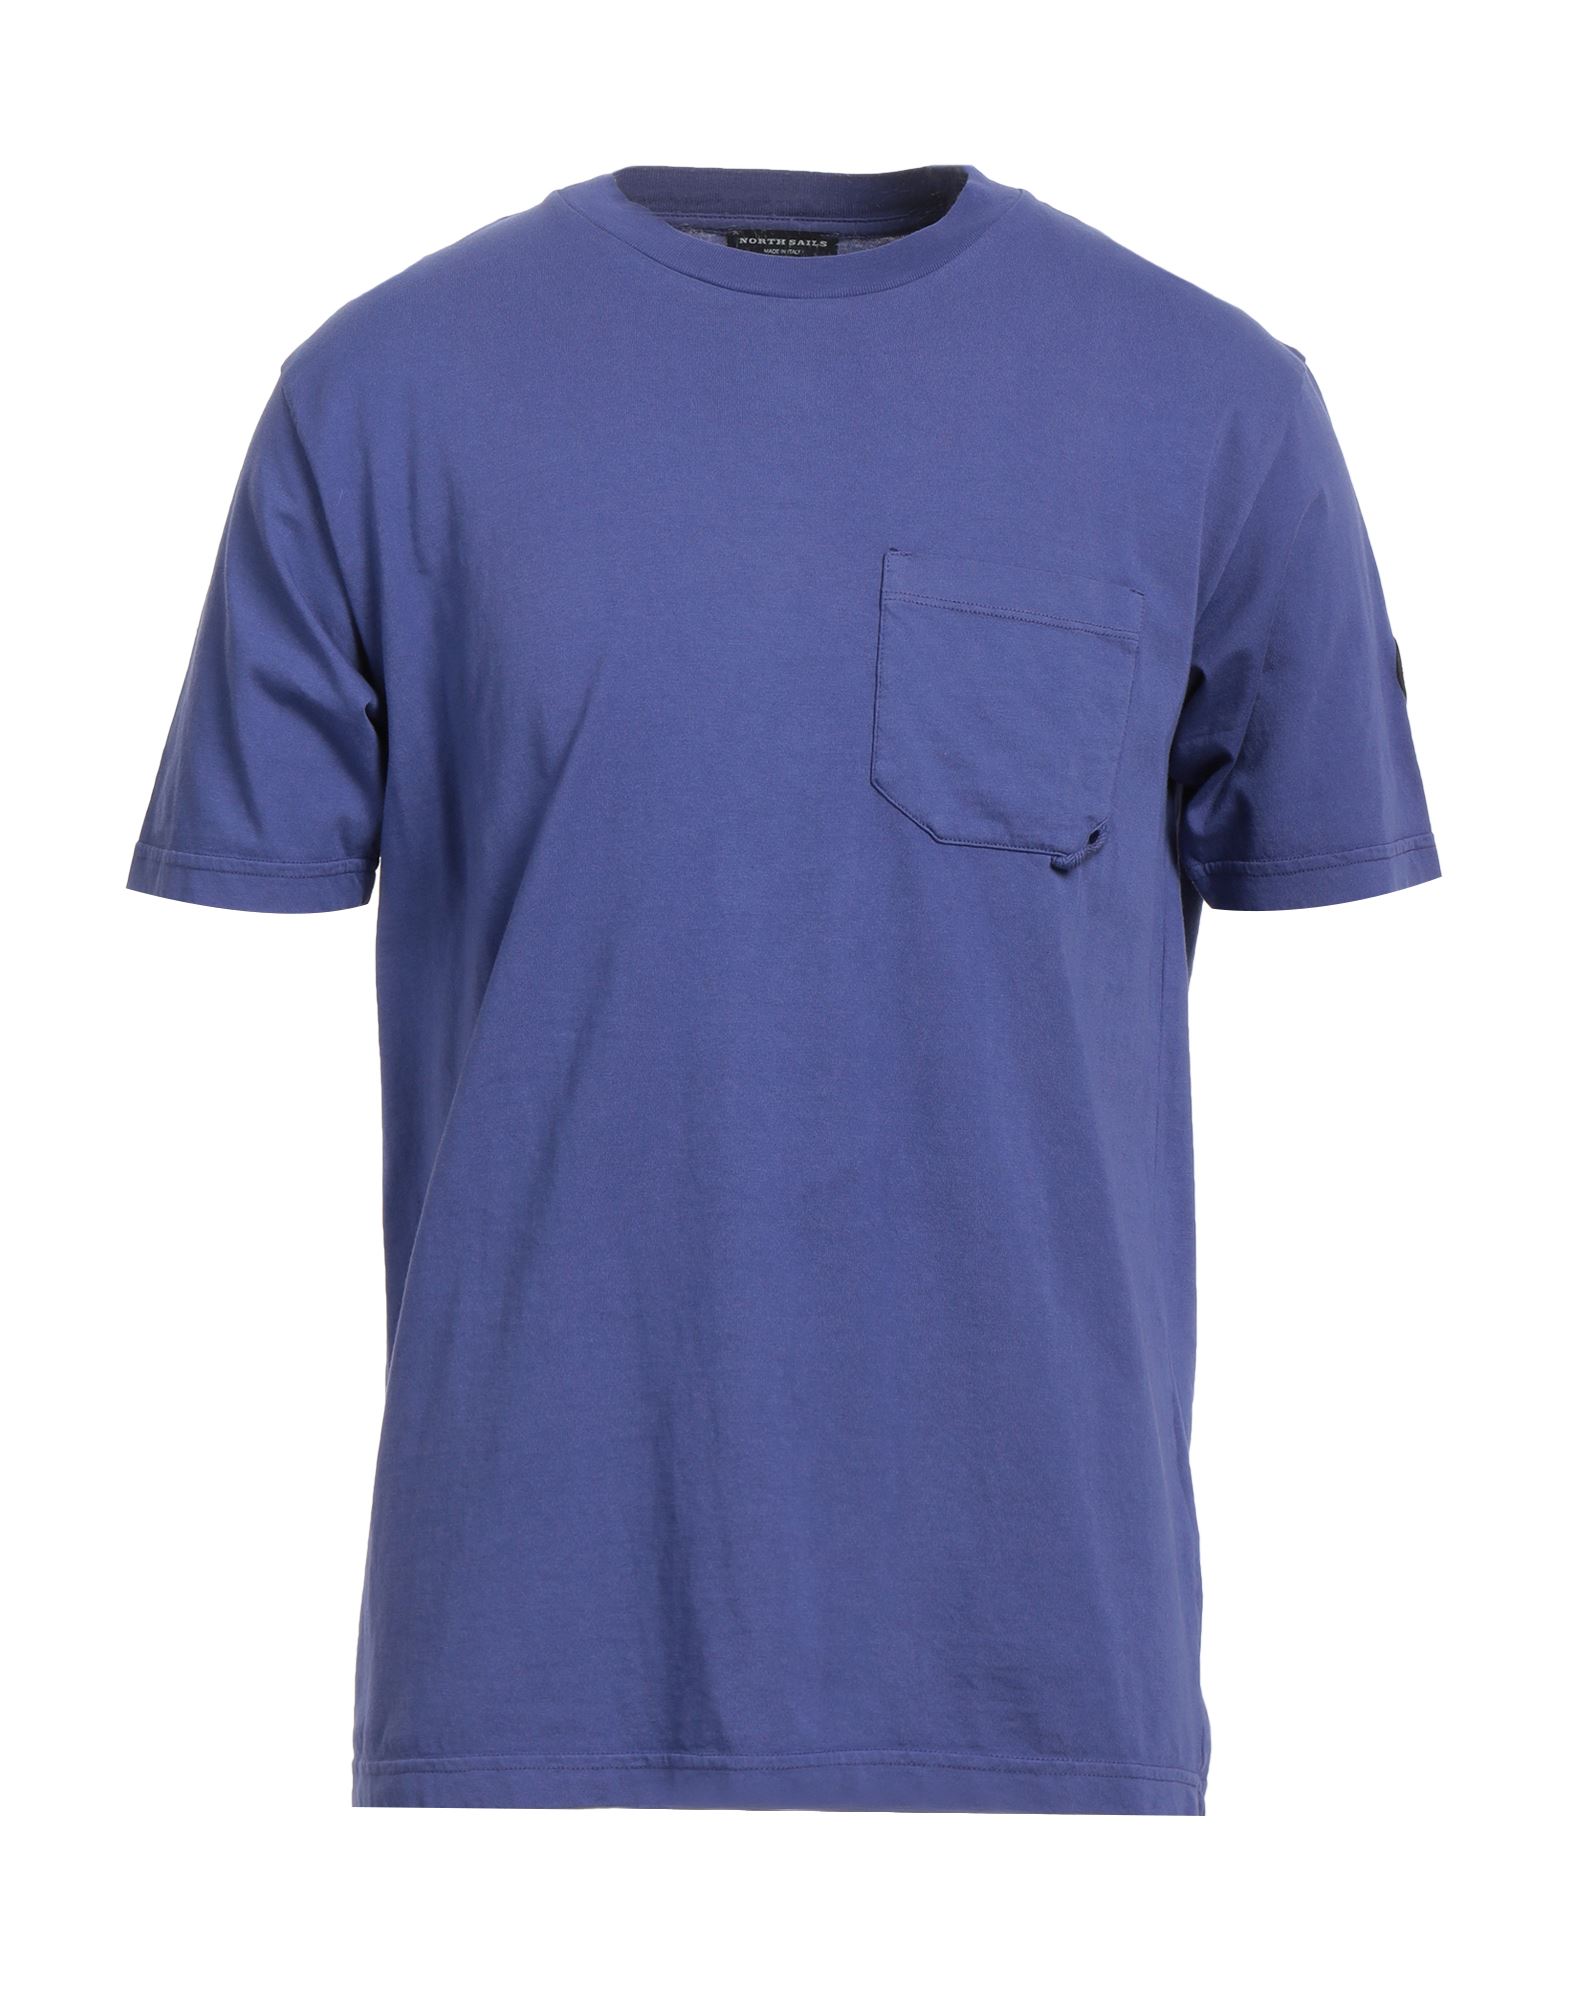 North Sails Man T-shirt Purple Size L Cotton